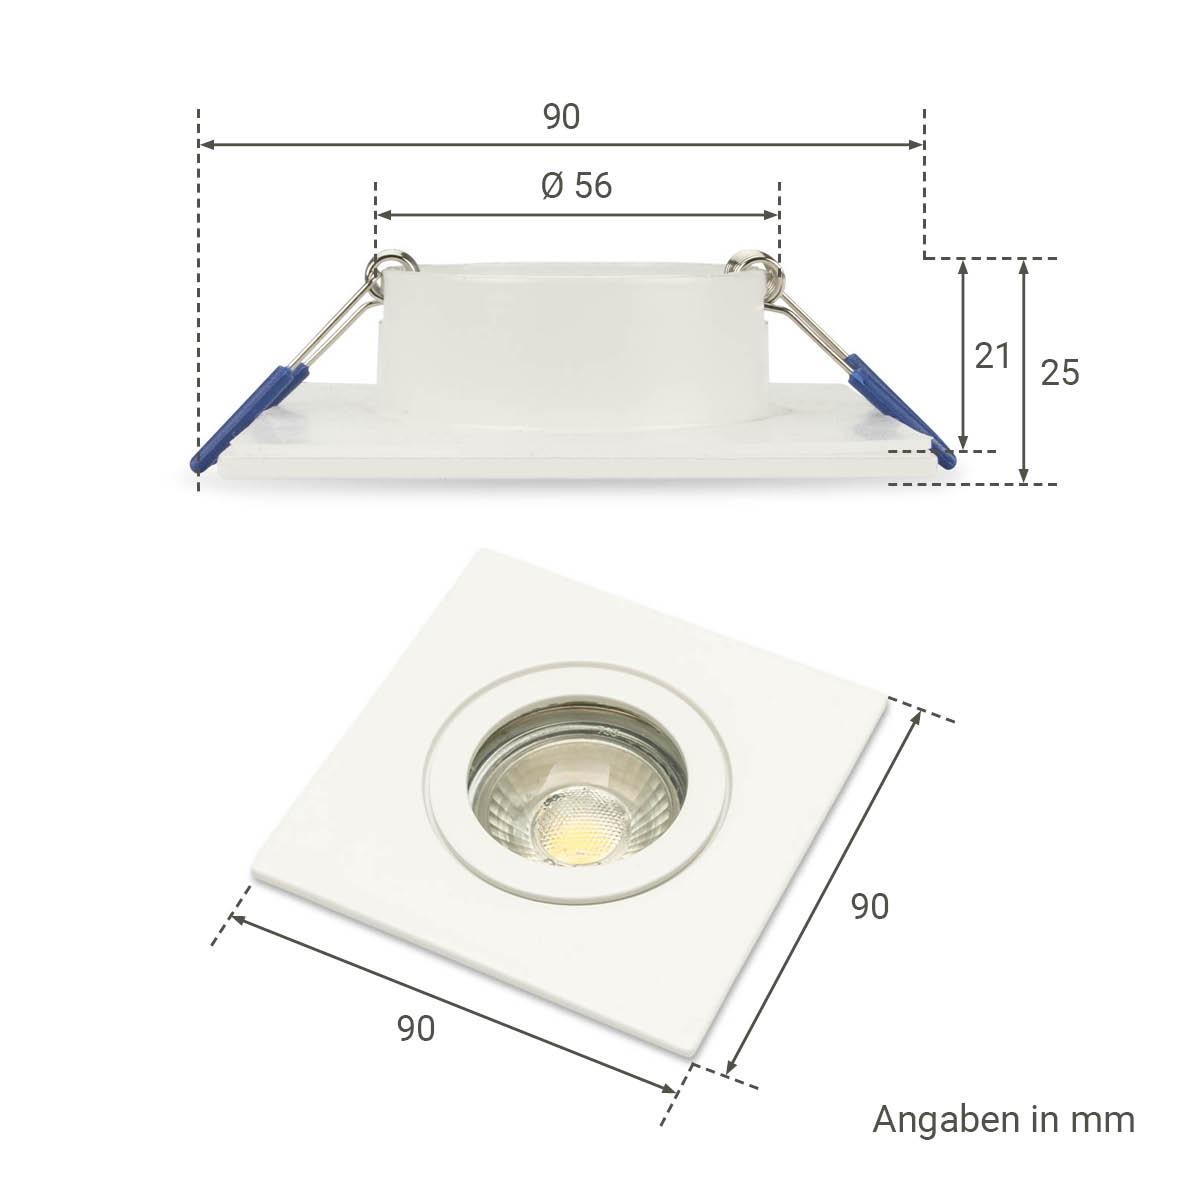 Einbauspot IP44 eckig - Farbe:  weiß - LED Leuchtmittel:  GU10 5W warmweiß